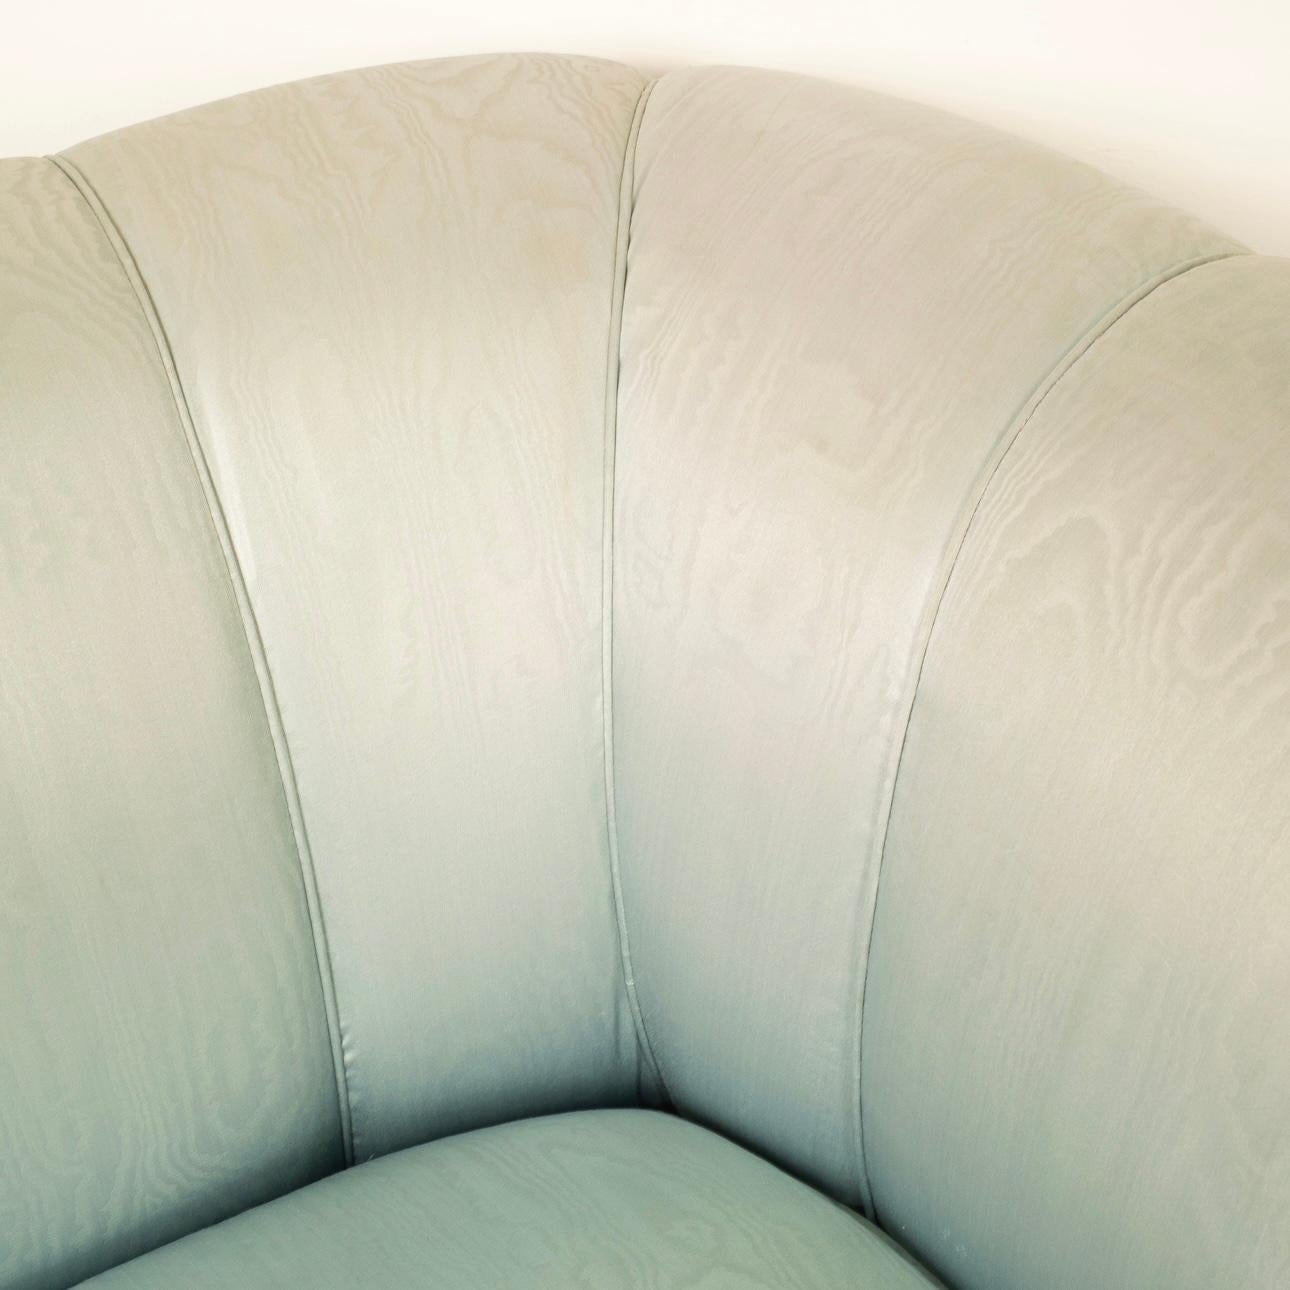 Découvrez la beauté unique d'une paire de canapés vintage conçus par l'architecte Fabrizio Smania pour Smania Studio Interni au début des années 1980. Ces canapés se distinguent par leur extraordinaire revêtement en soie moirée bleue irisée, qui est